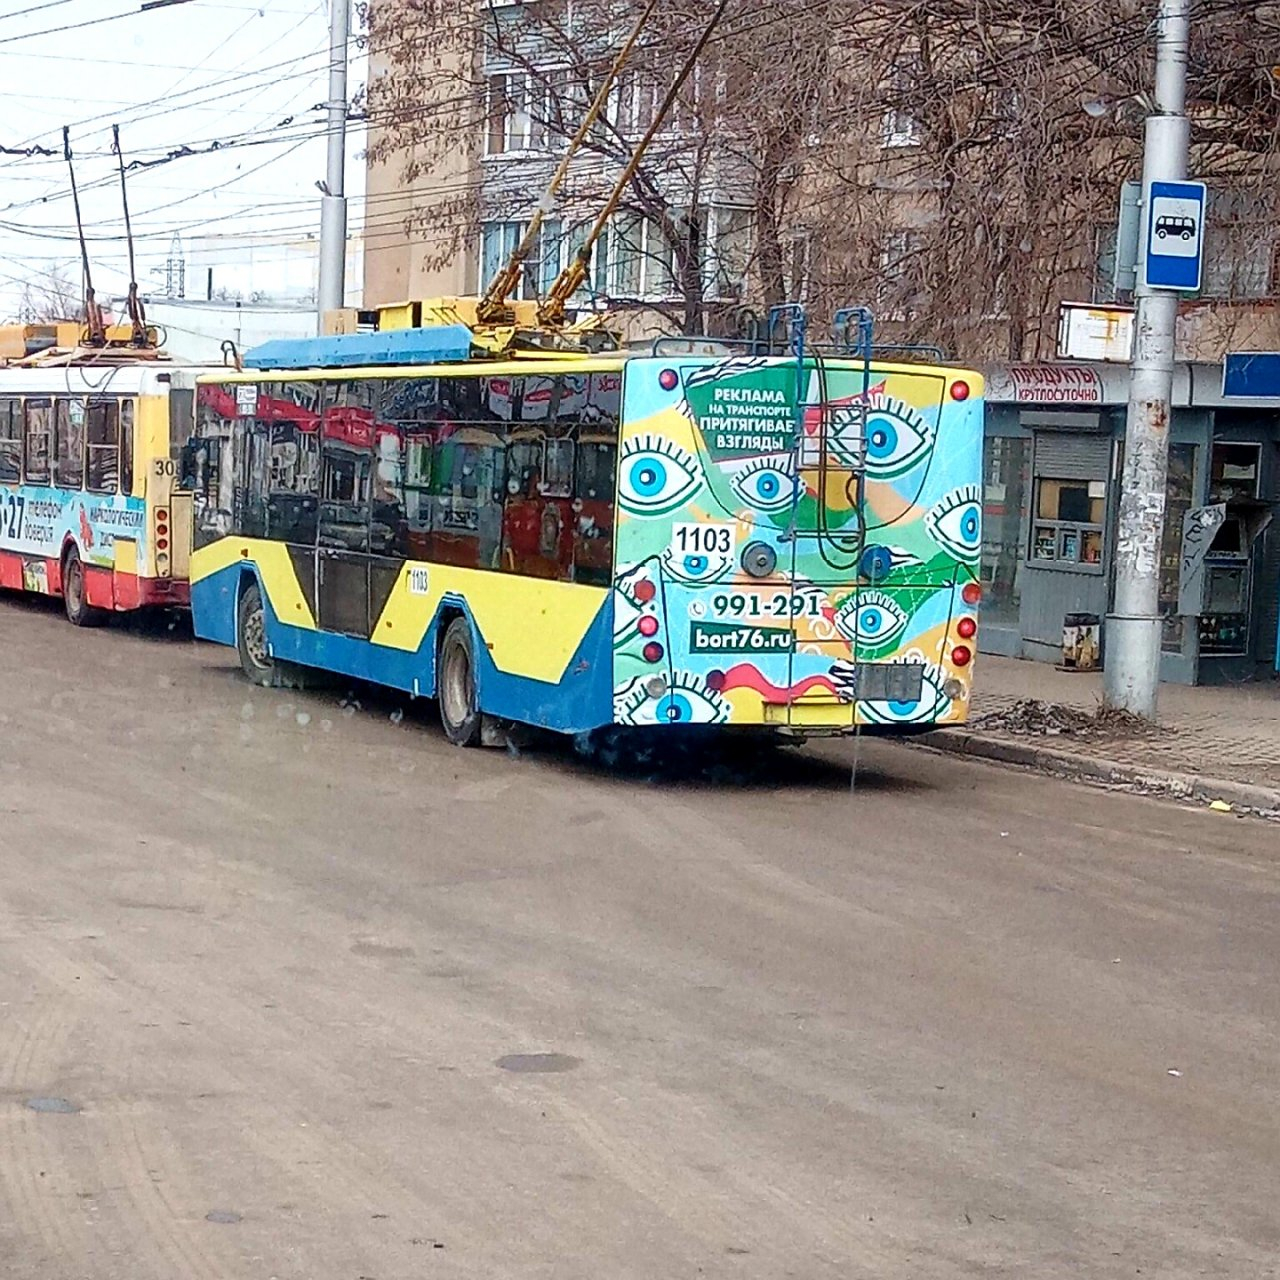 Приобрести за свой счет: водителей рязанских автобусов и троллейбусов обяжут приобрести "Карту водителя"